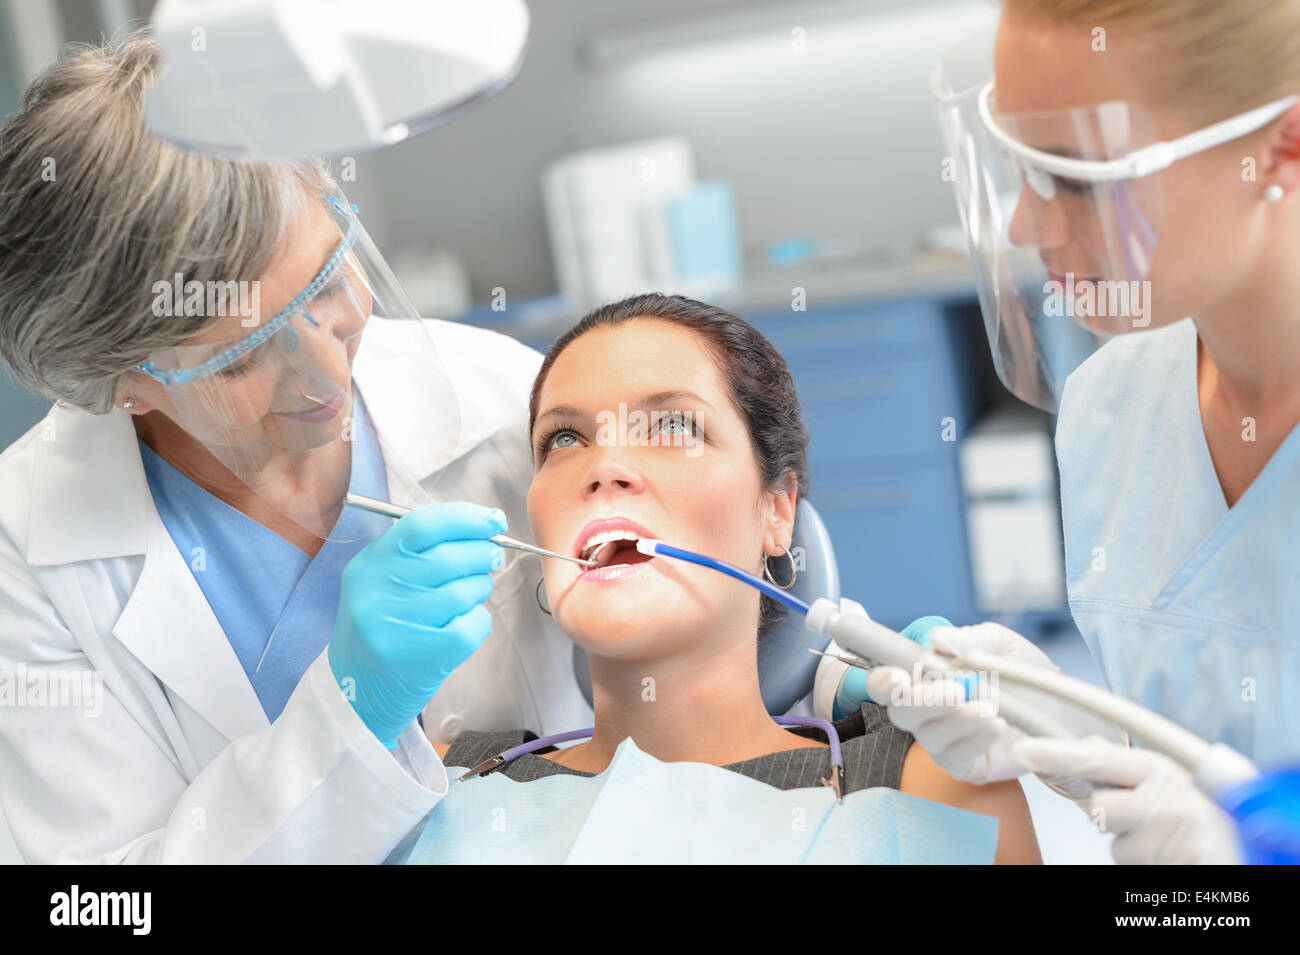 Donna dentale del paziente verificare a bocca aperta professionale team di dentista Foto Stock